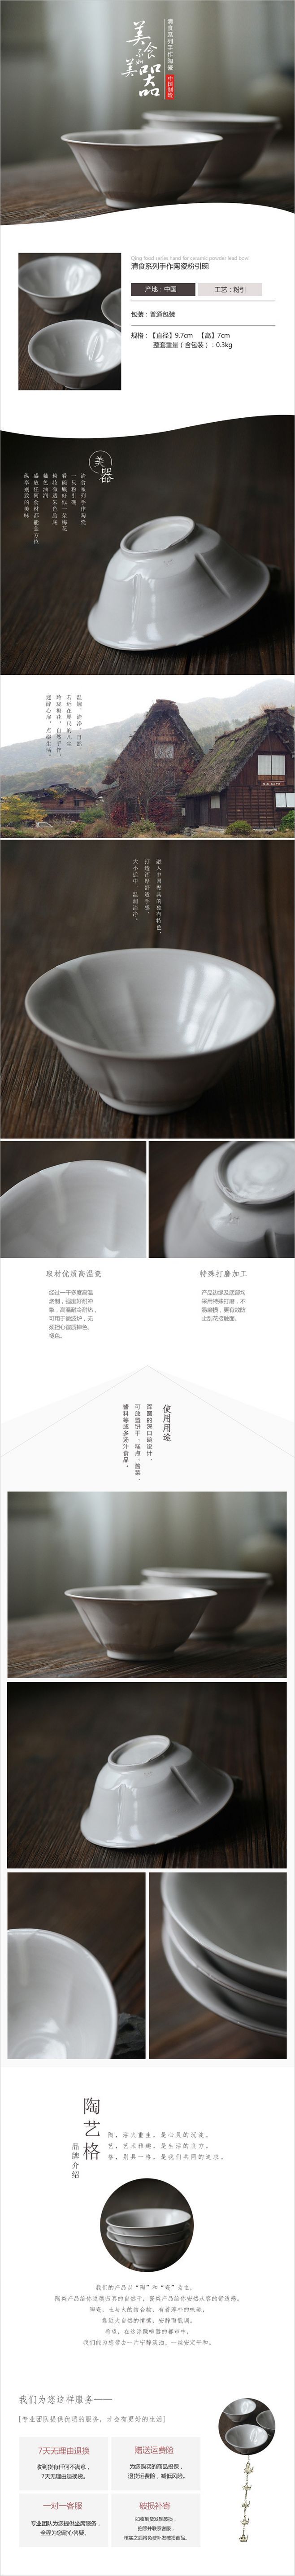 淘宝美工小海王骨瓷碗纯白6寸面碗家用陶瓷米饭碗白瓷碗白色吃饭碗大汤碗泡面碗作品